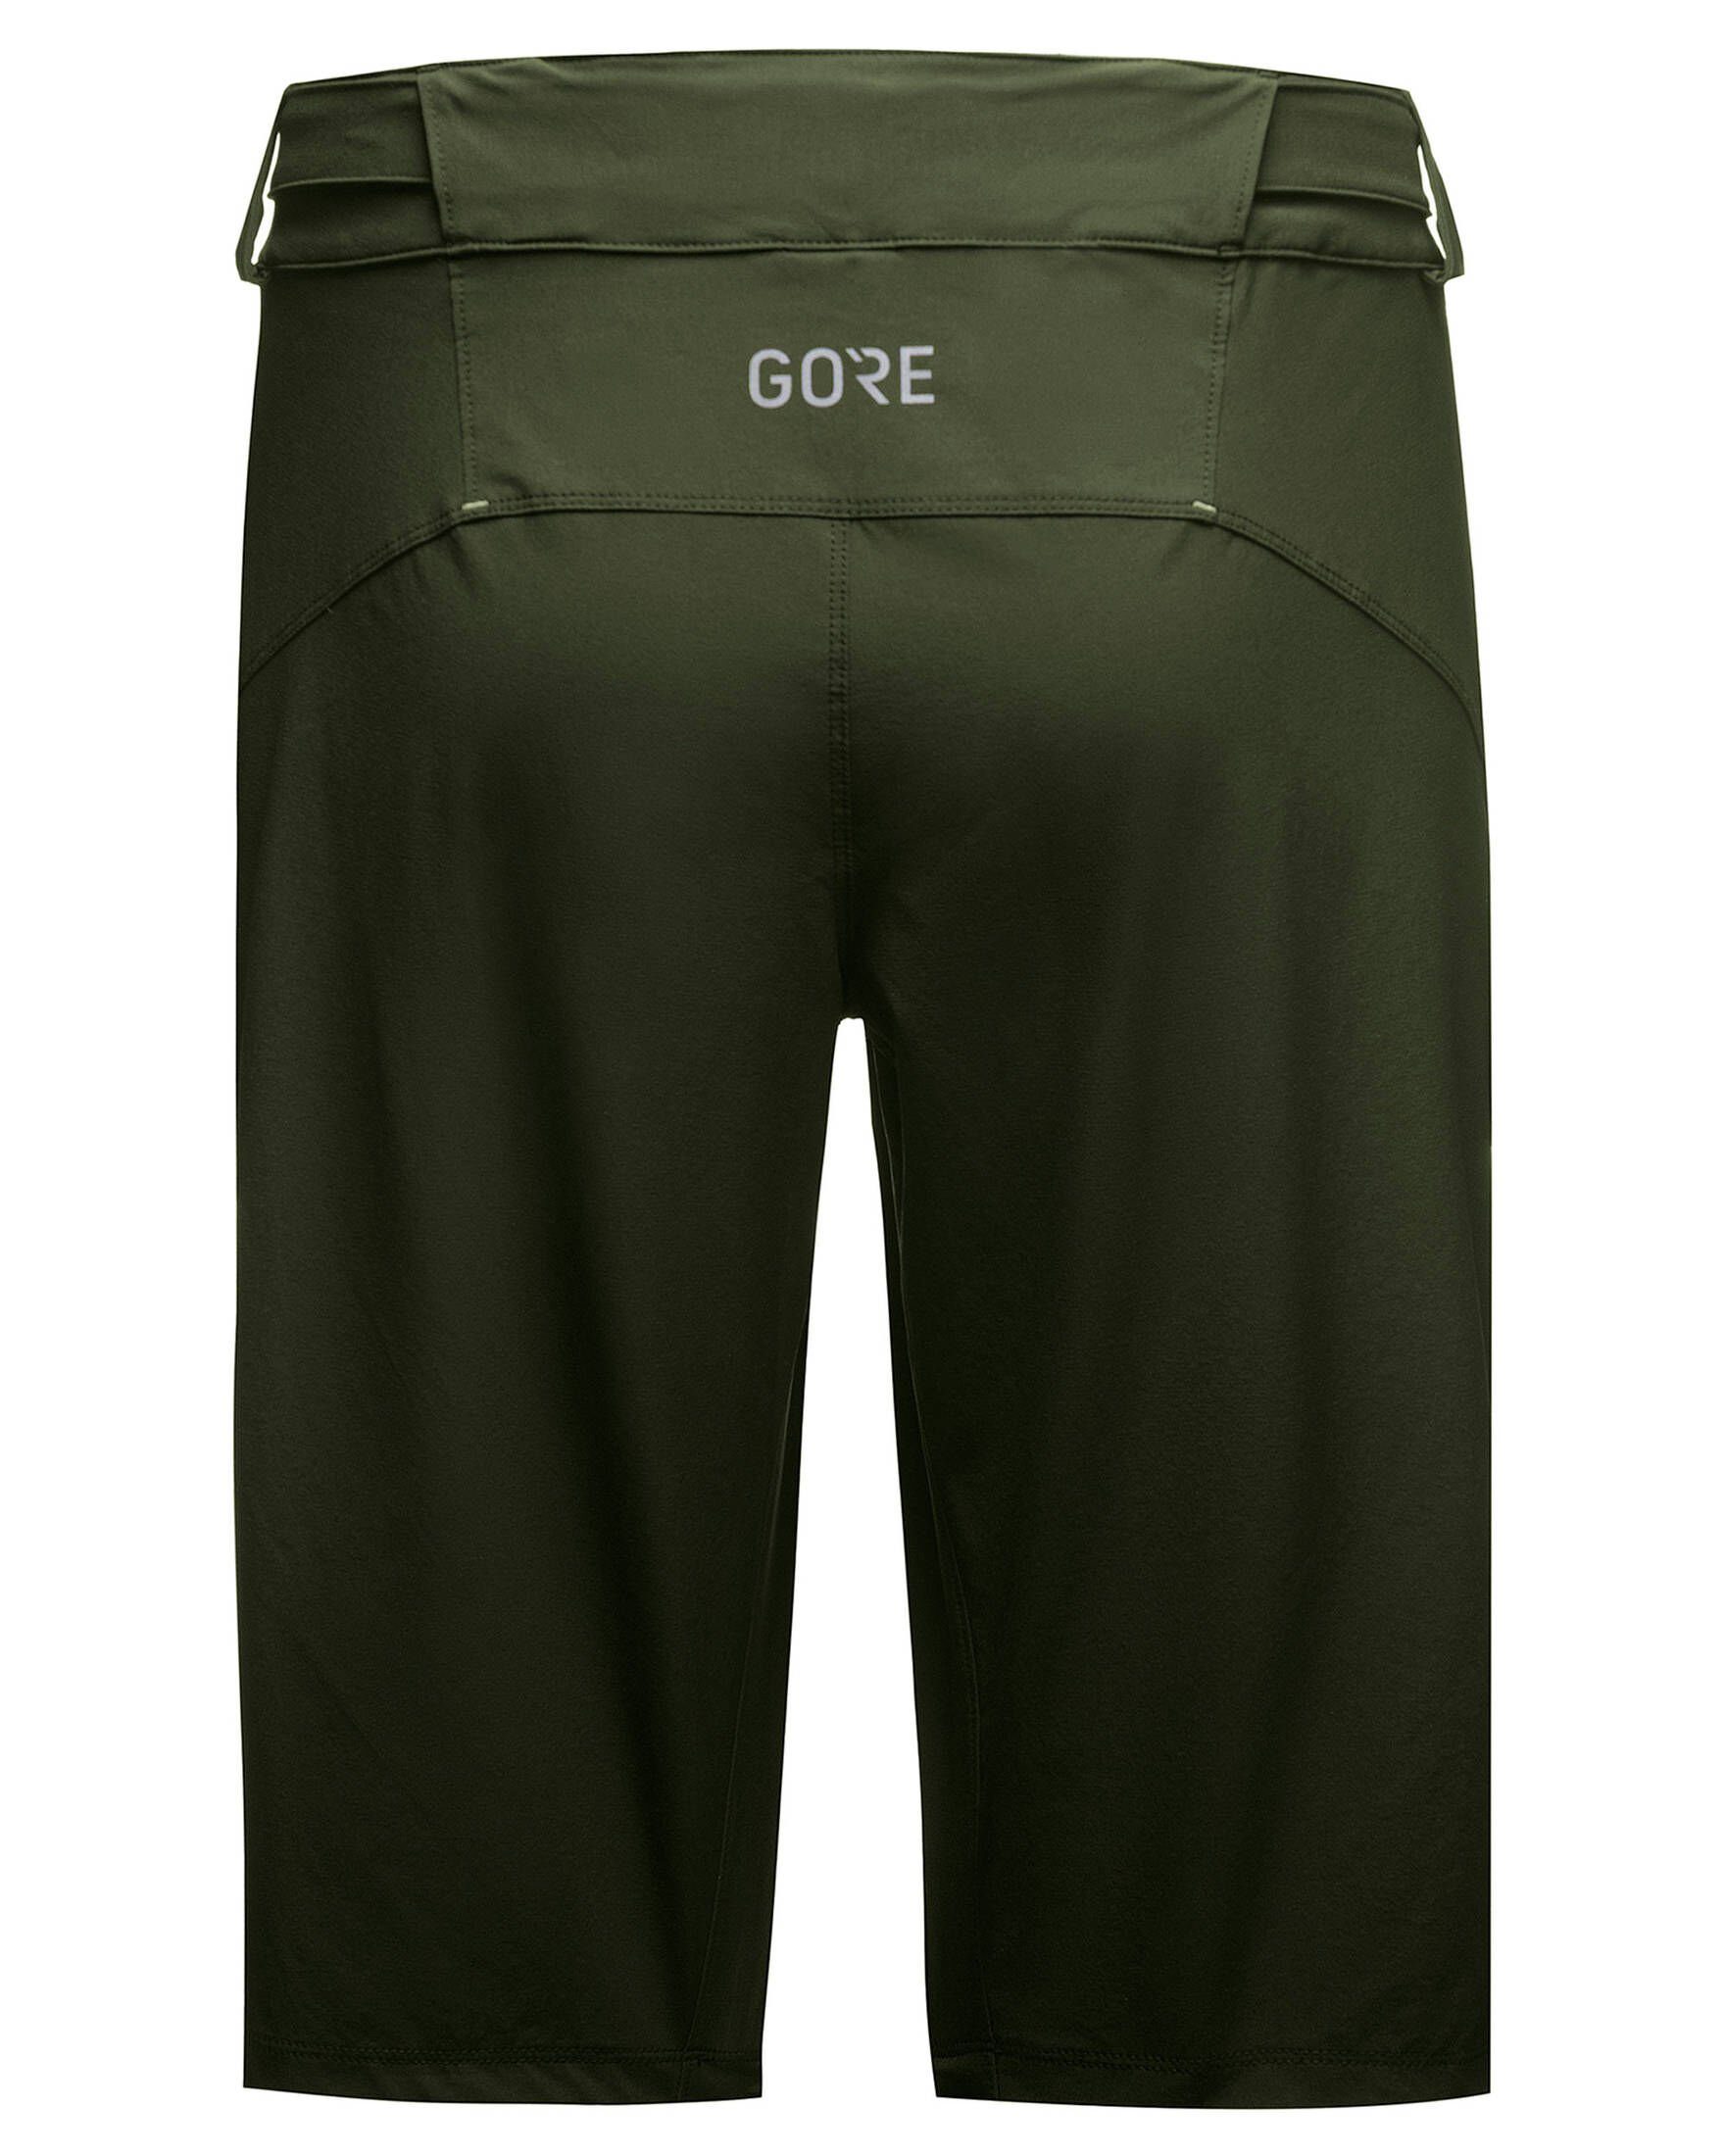 (403) Shorts "C5" GORE® Herren olive Radsport Fahrradhose Wear (1-tlg)